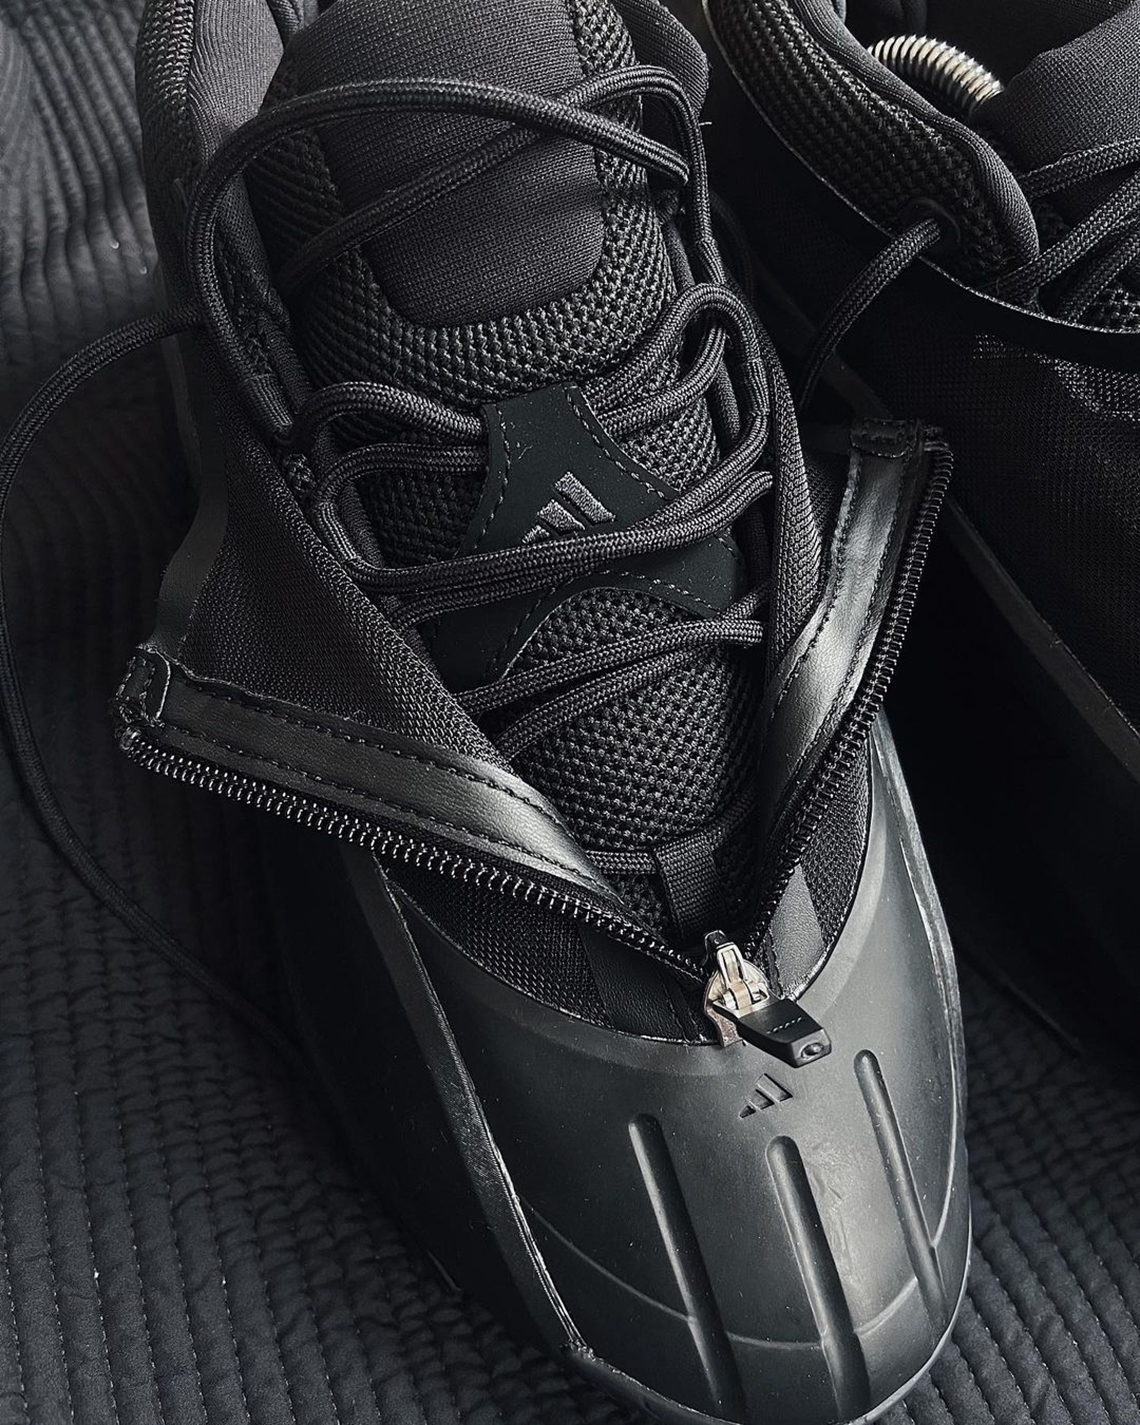 adidas Crazy IIInfinity Triple Black 4